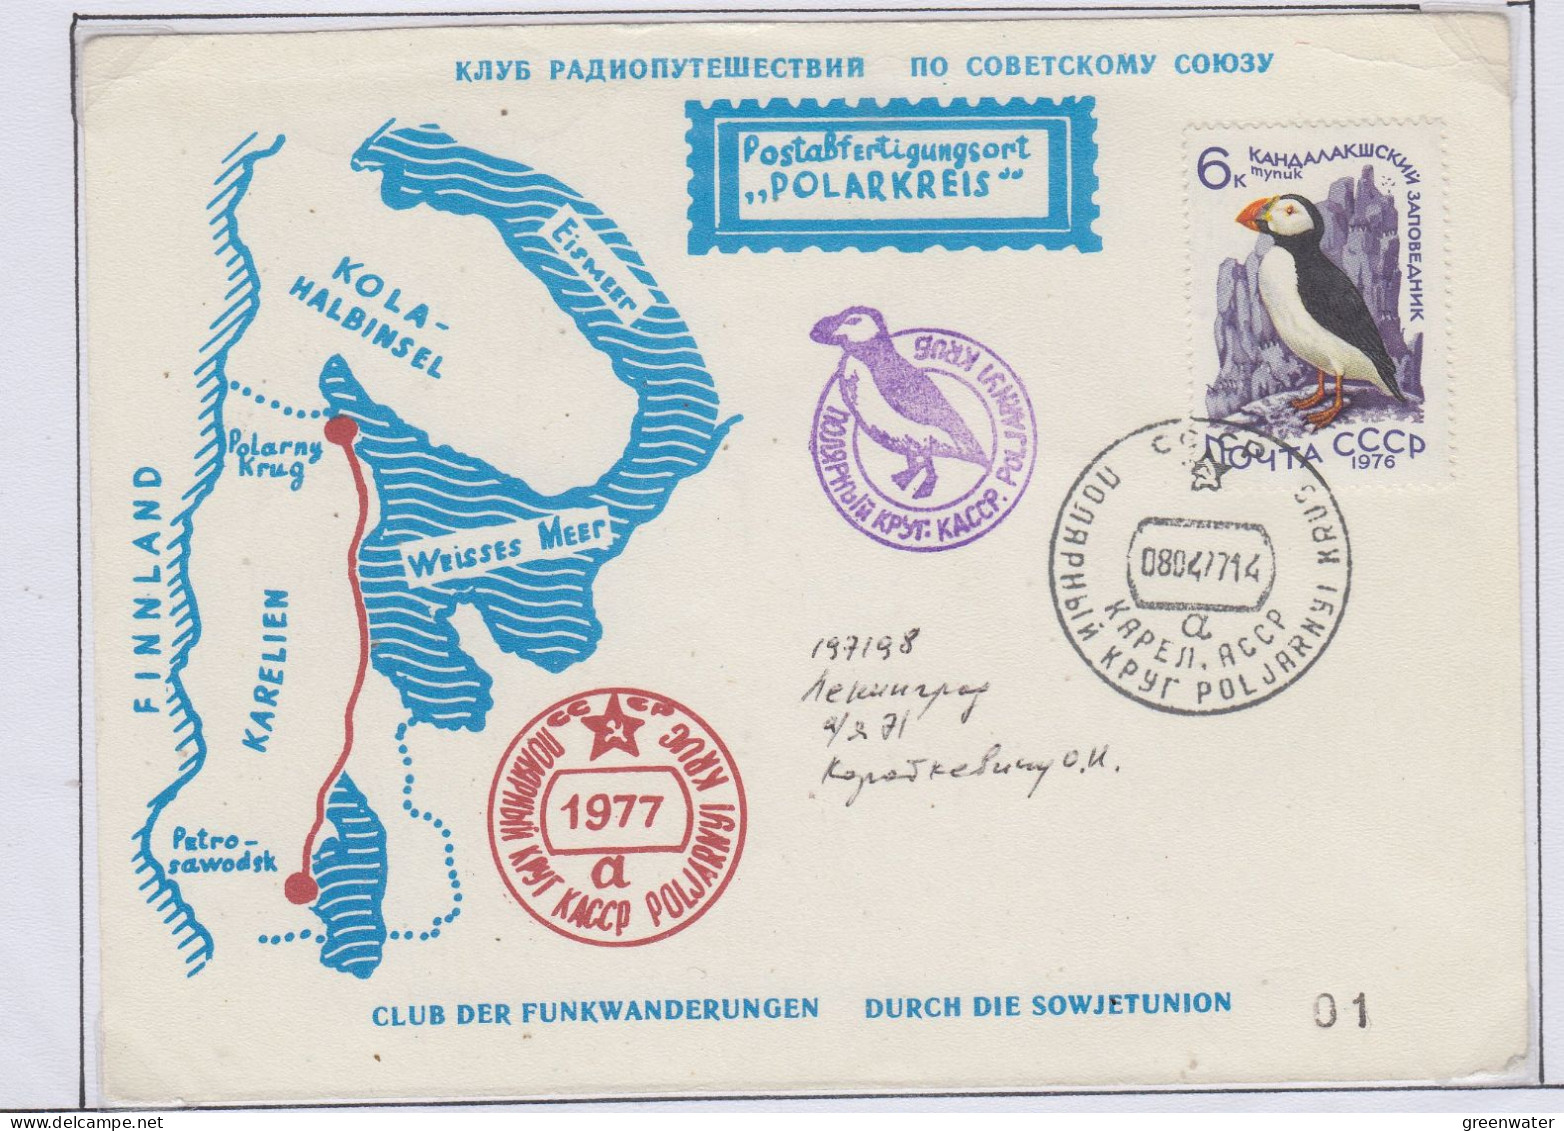 Russia 1977 Funkwanderung In Karelien  Ca 08.04.1977 (PW179) - Arktis Expeditionen